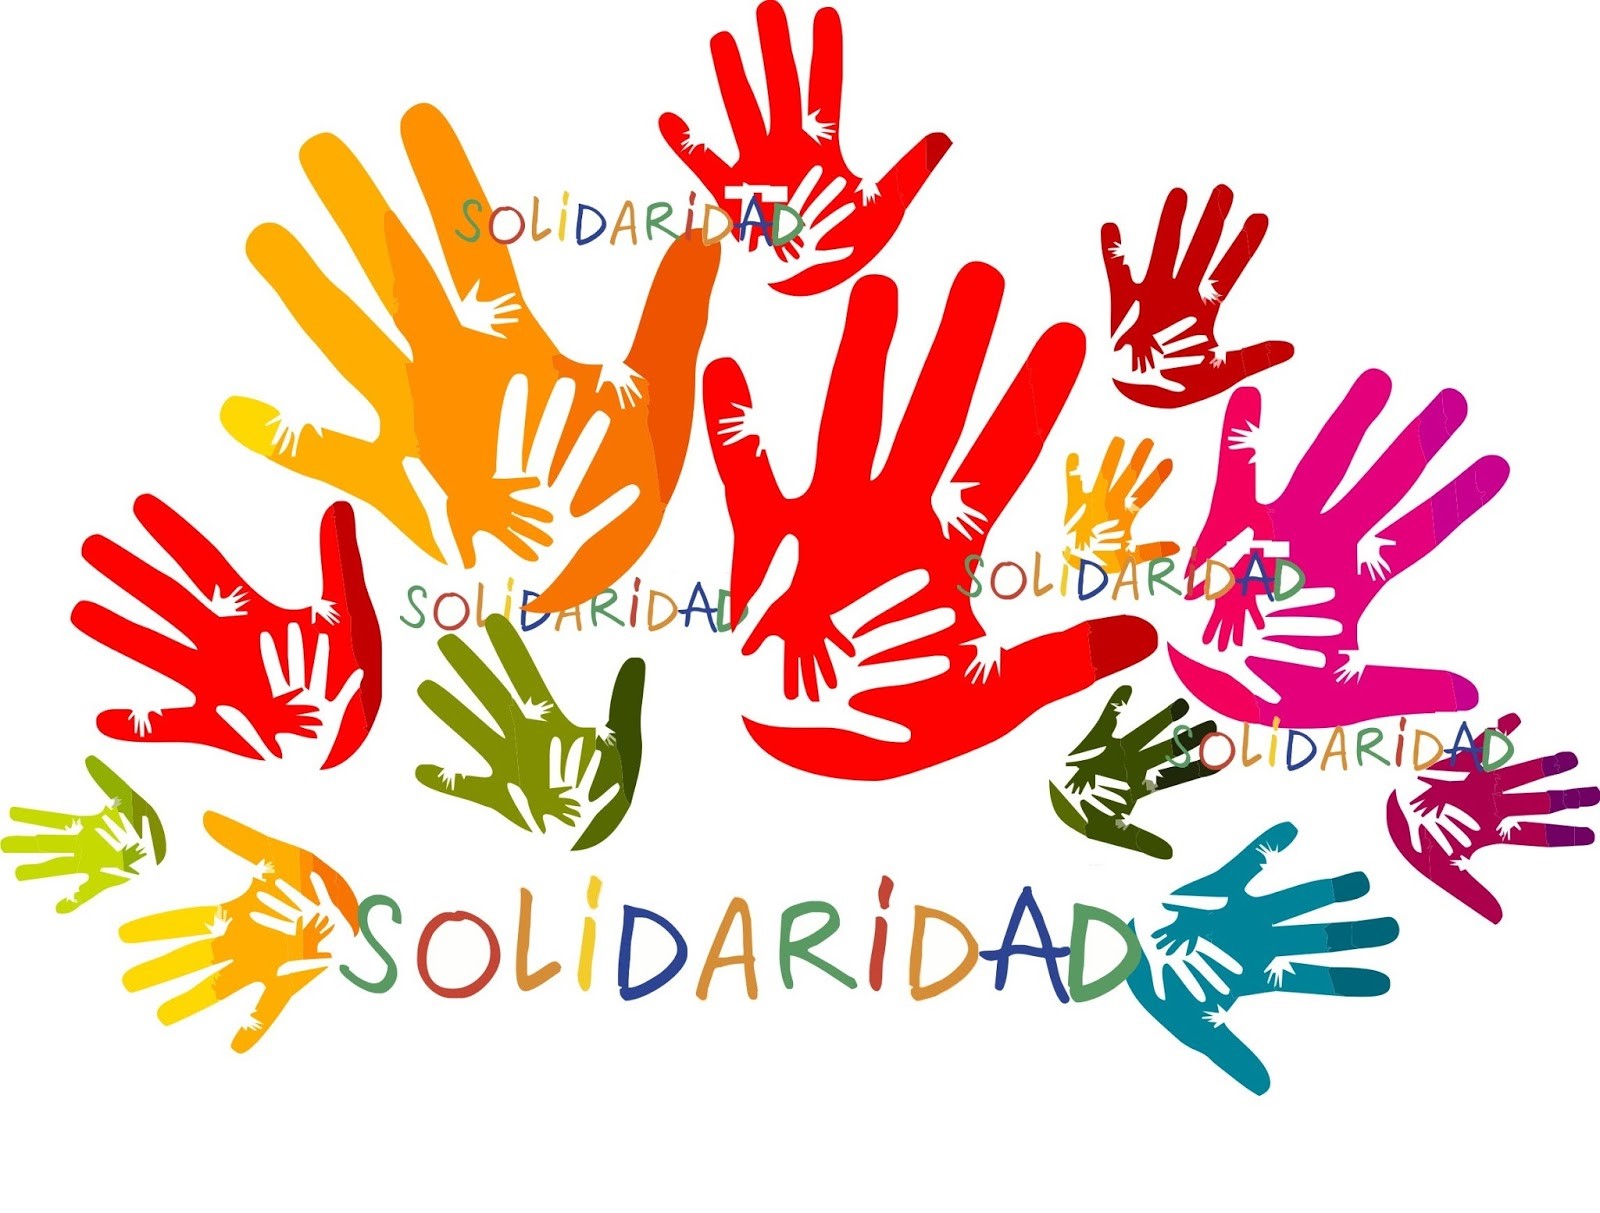 la-solidaridad-el-valor-humano-por-excelencia-sebastian-school